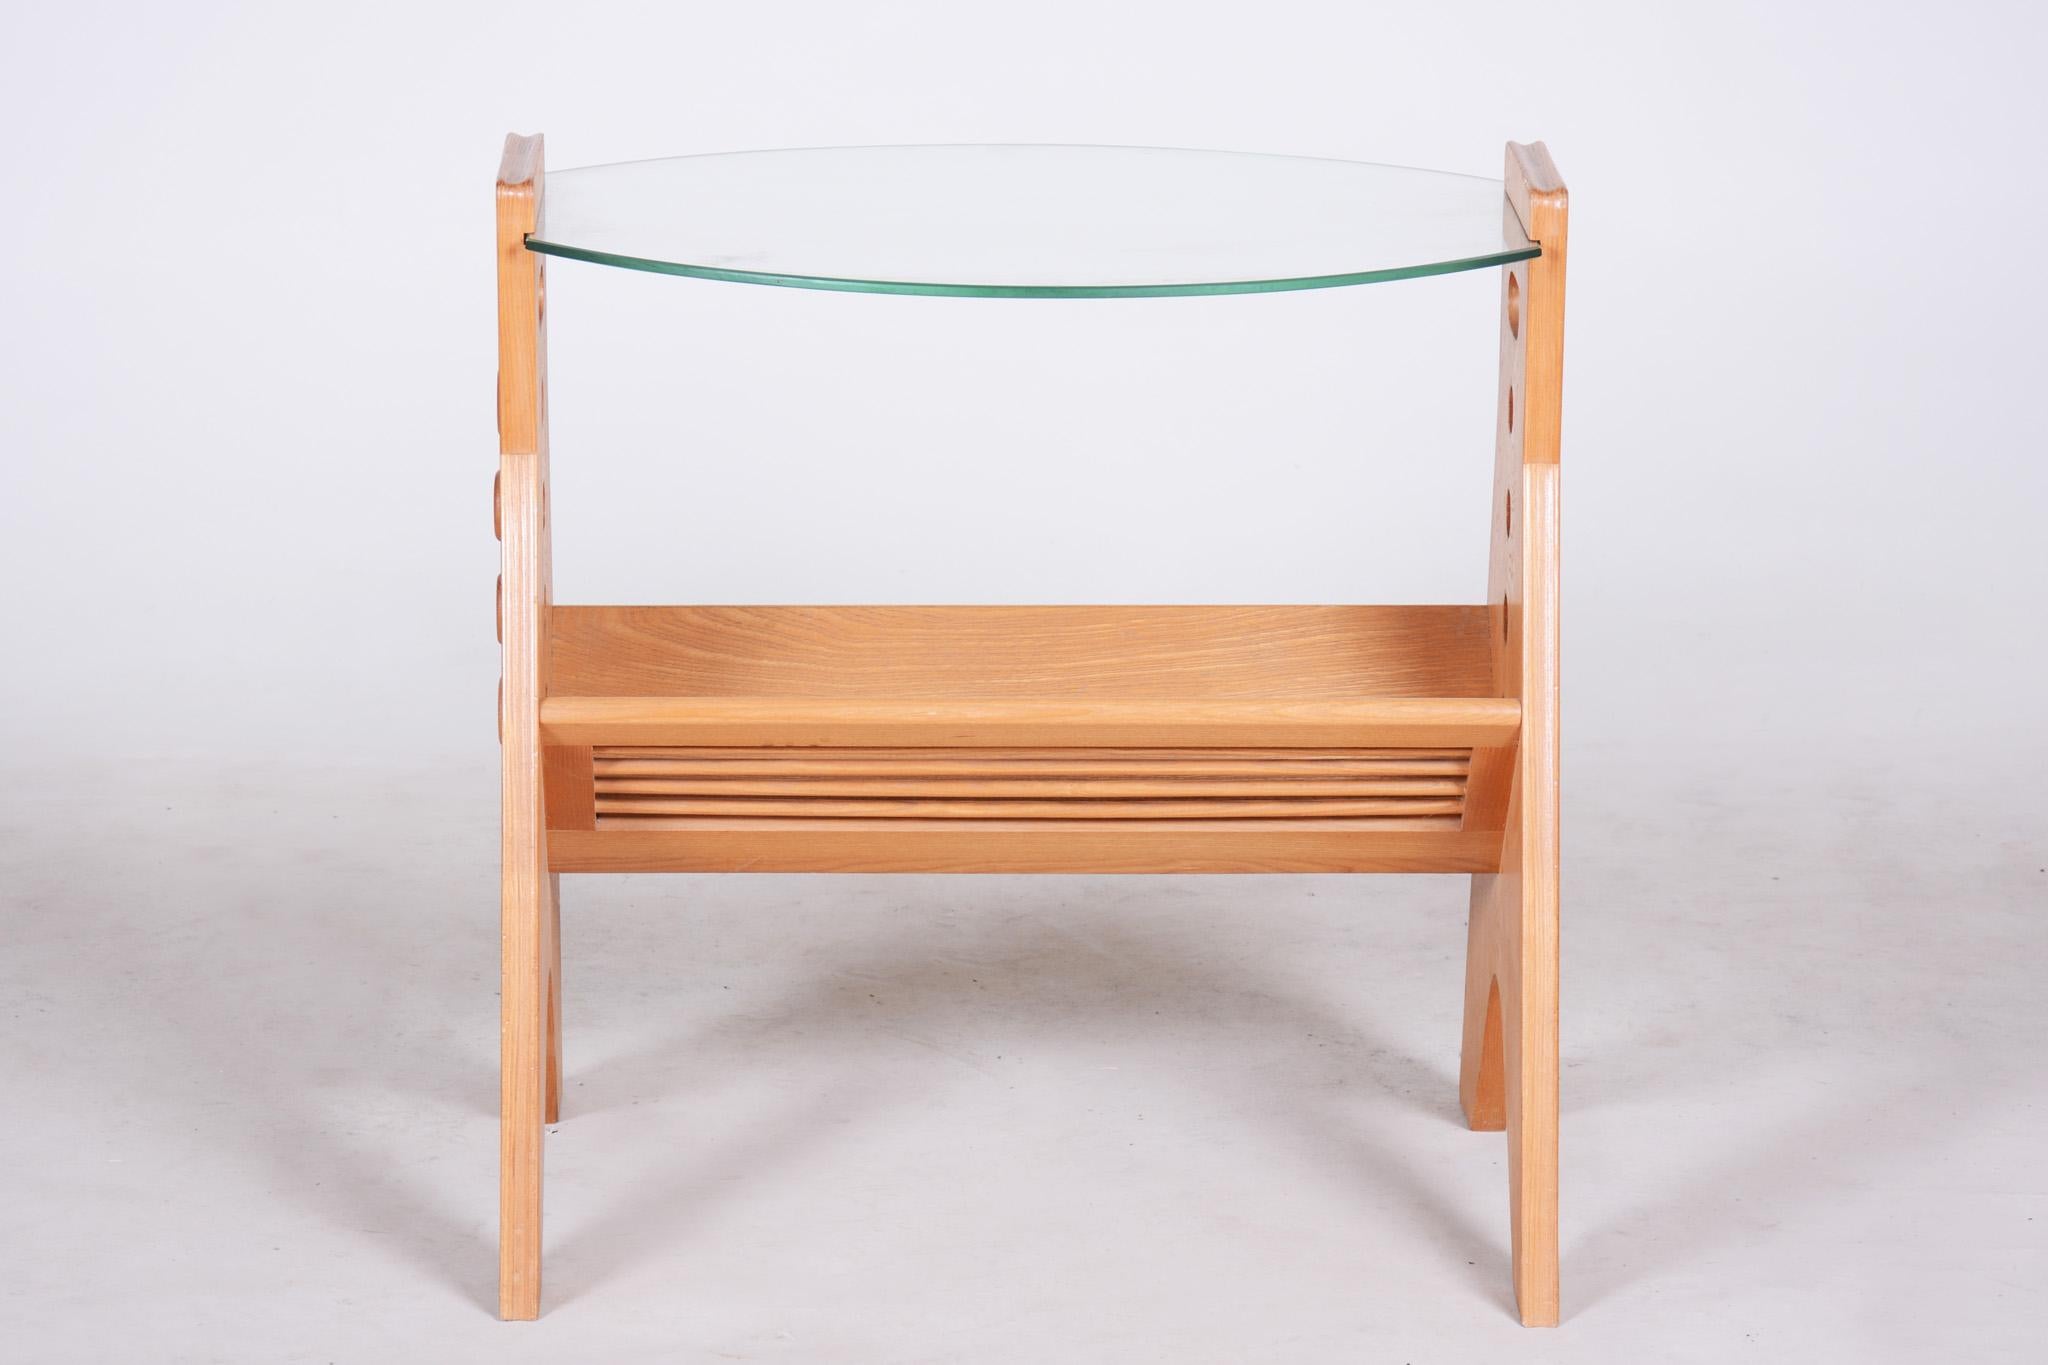 Frêne Table basse en frêne d'origine, de style moderne du milieu du siècle dernier, fabriquée dans les années 1950 par LUV Workshop en vente